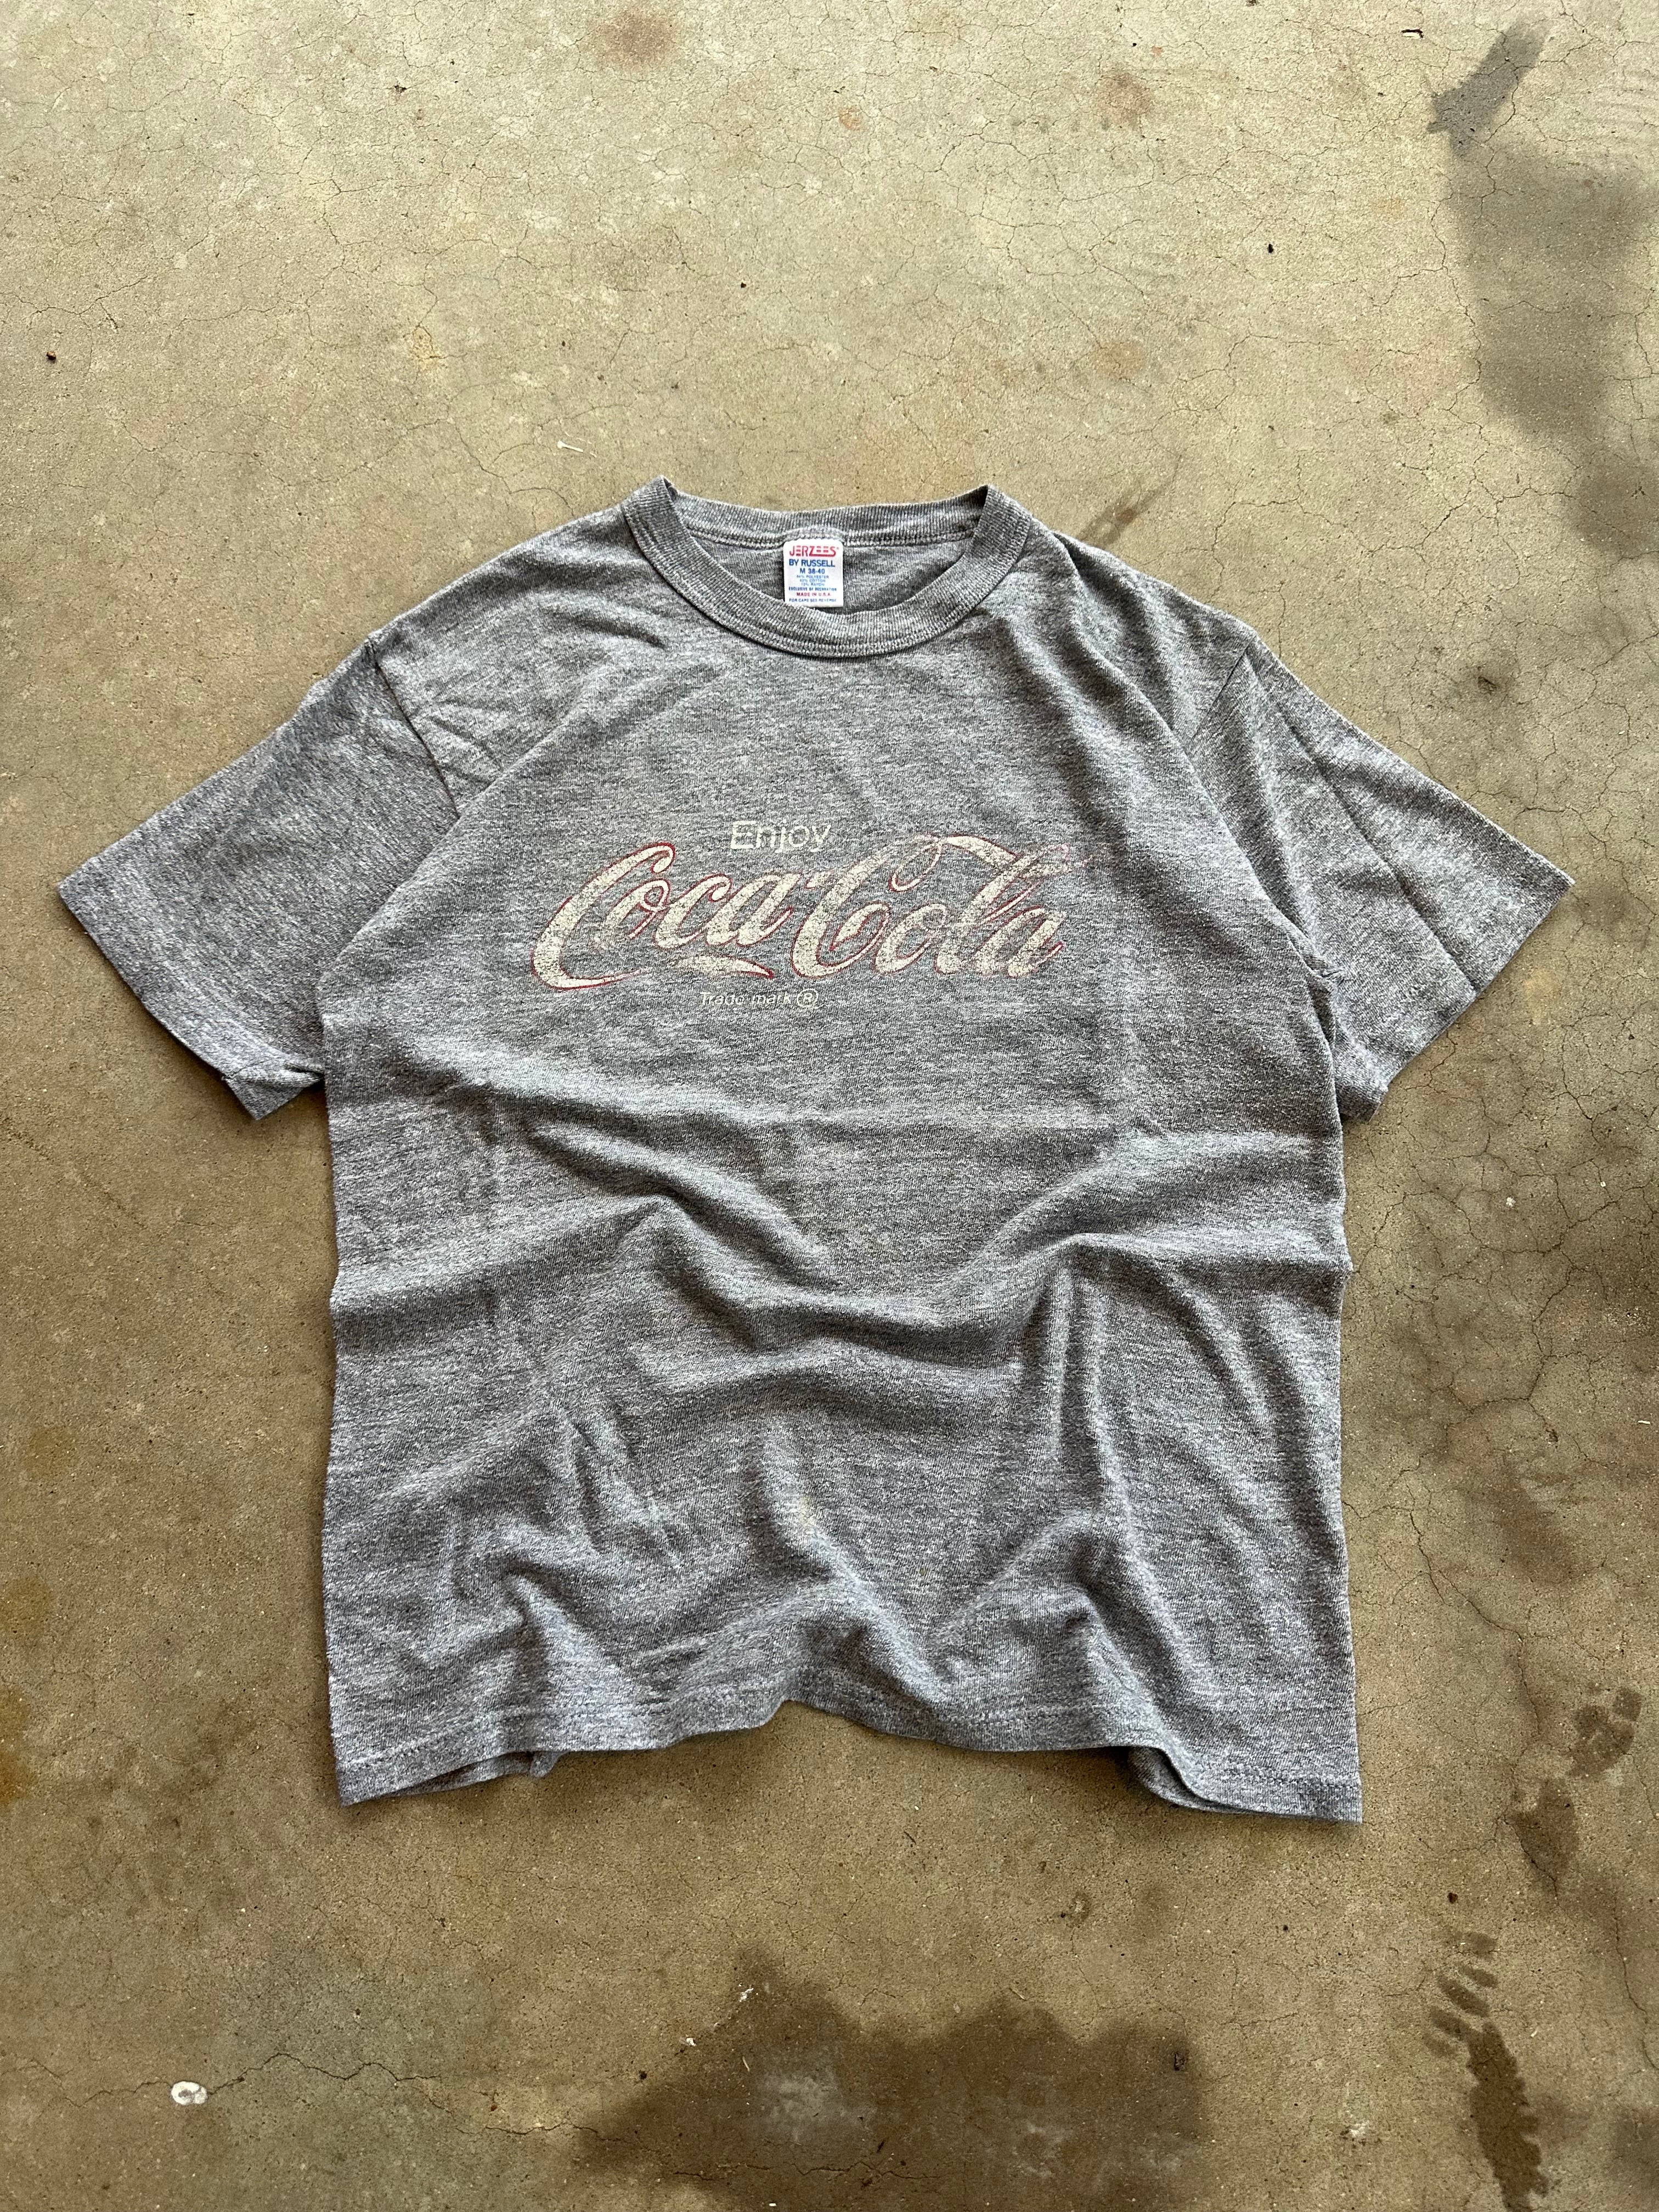 1980s Faded Coca-Cola T-Shirt (S)